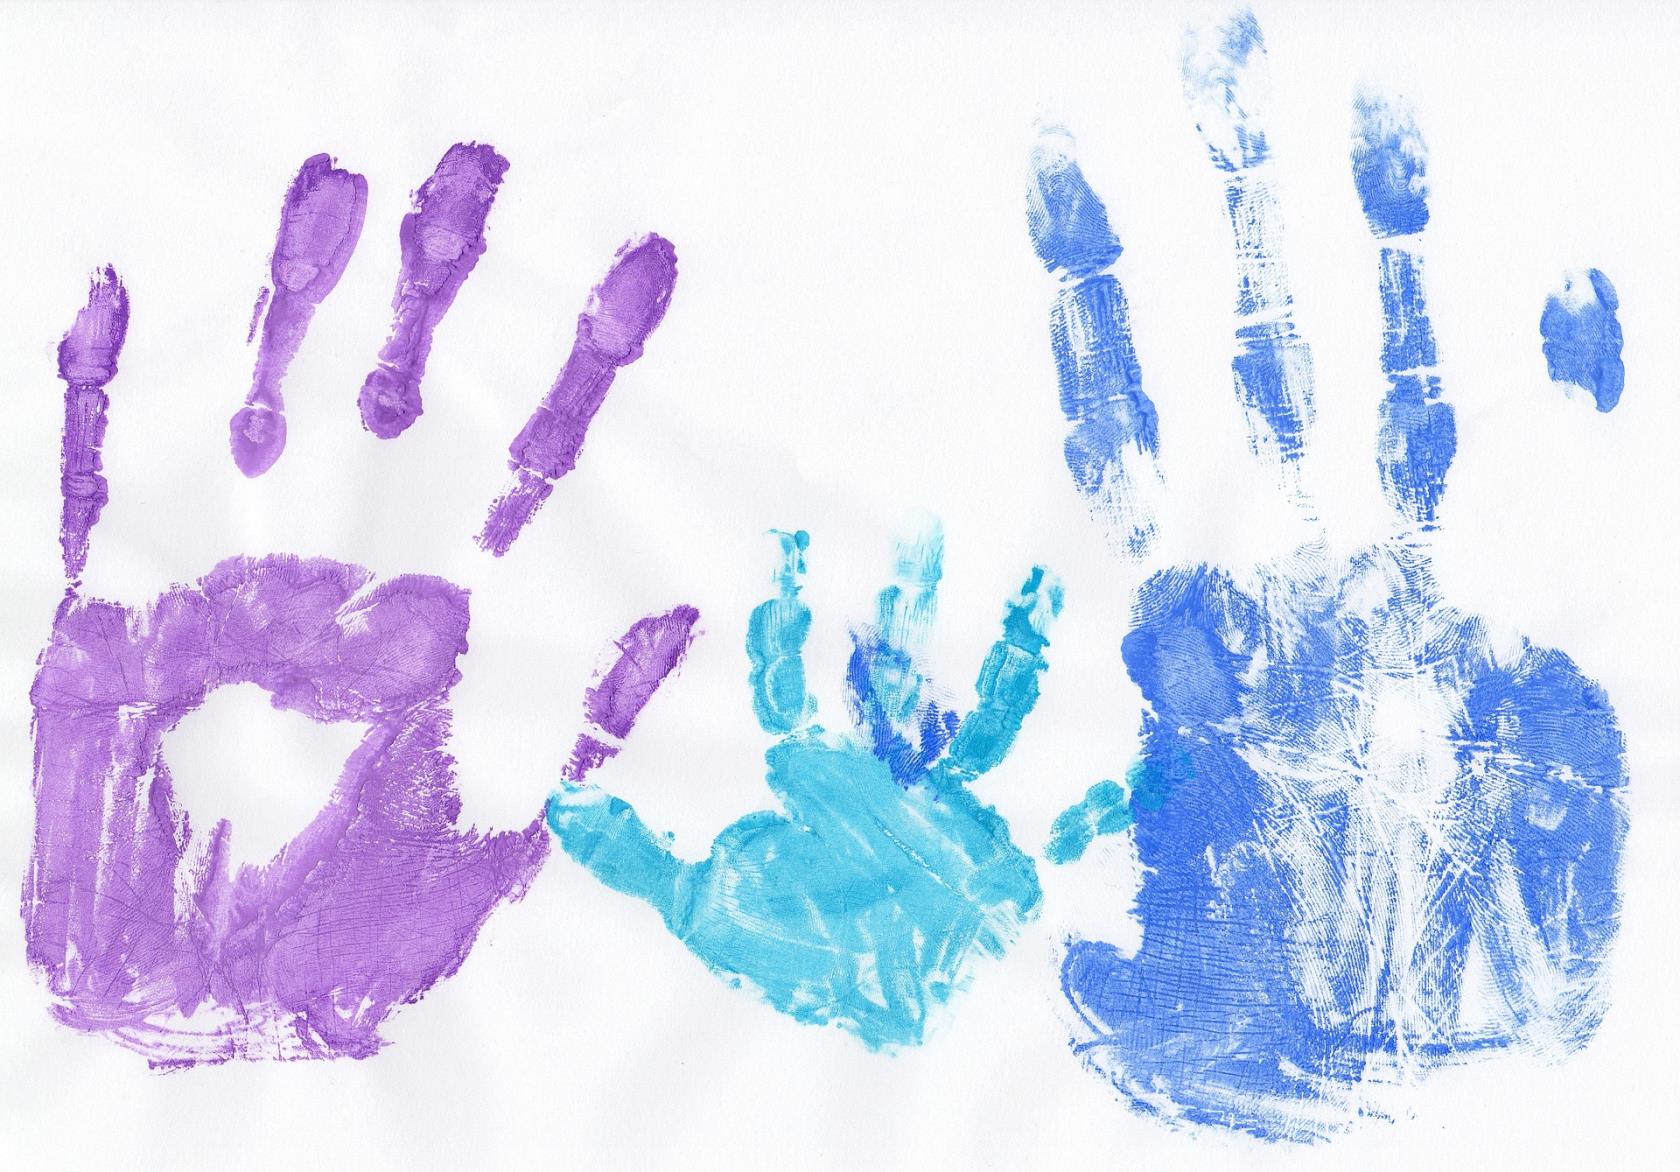 Avtryck av händer i olika färger och storlekar.